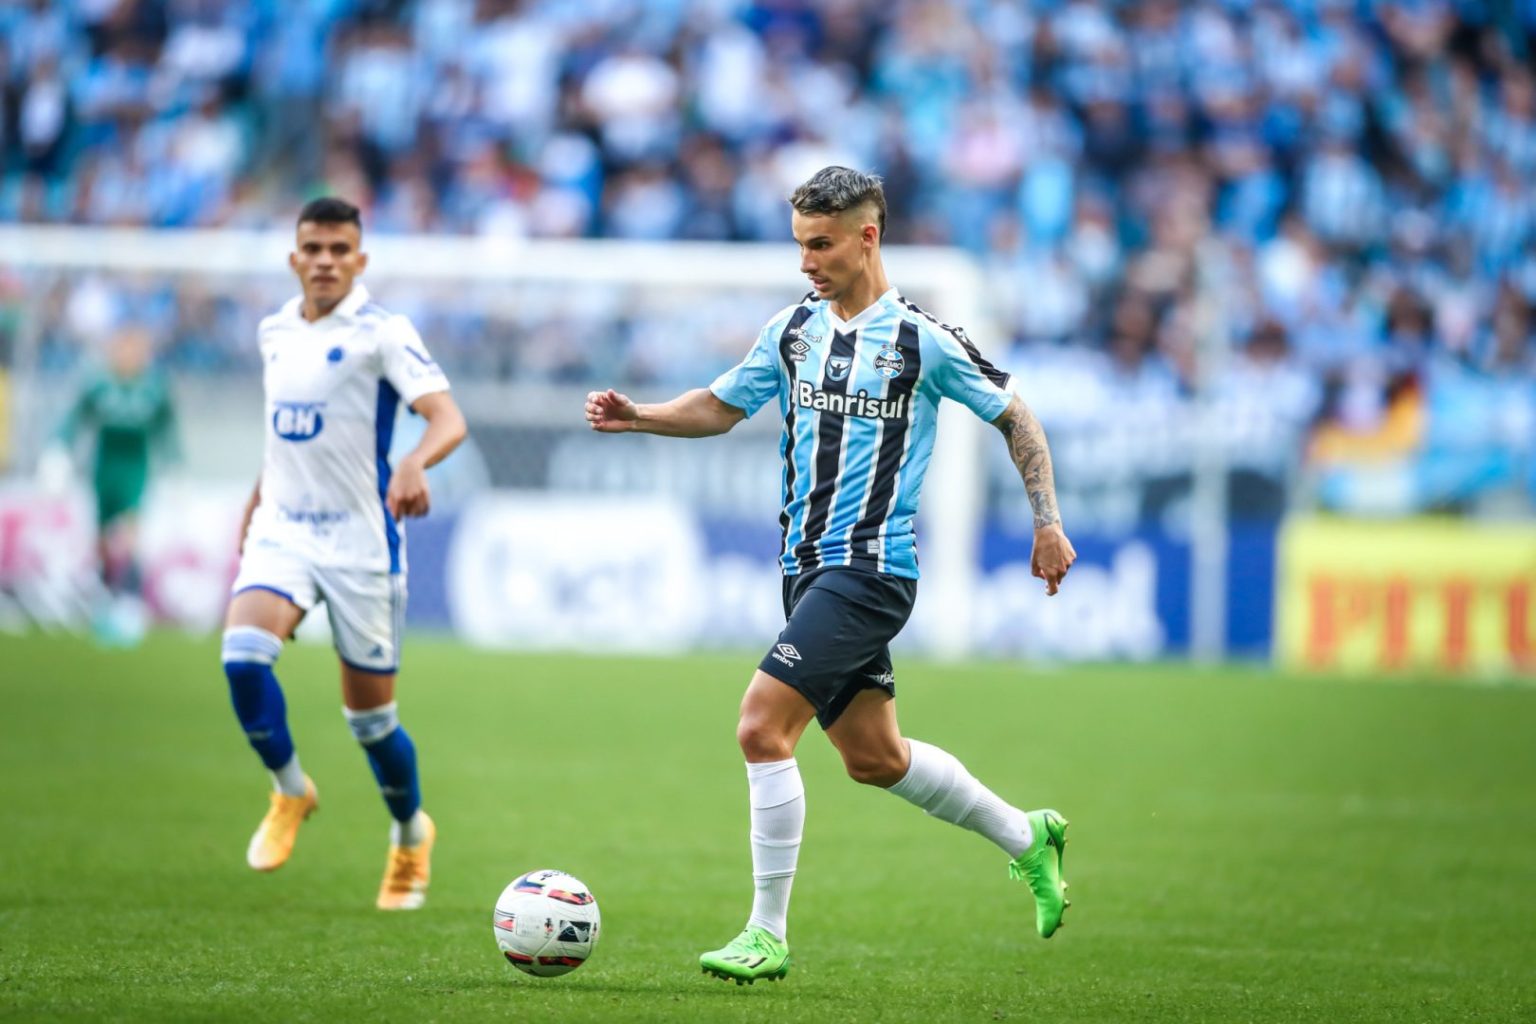 Diante de mais de 51 mil torcedores na Arena, o Grêmio empatou em 2 a 2 com o Cruzeiro, na tarde deste domingo (21), pela 25ª rodada da Série B do Campeonato Brasileiro. O Cruzeiro começou o jogo ata